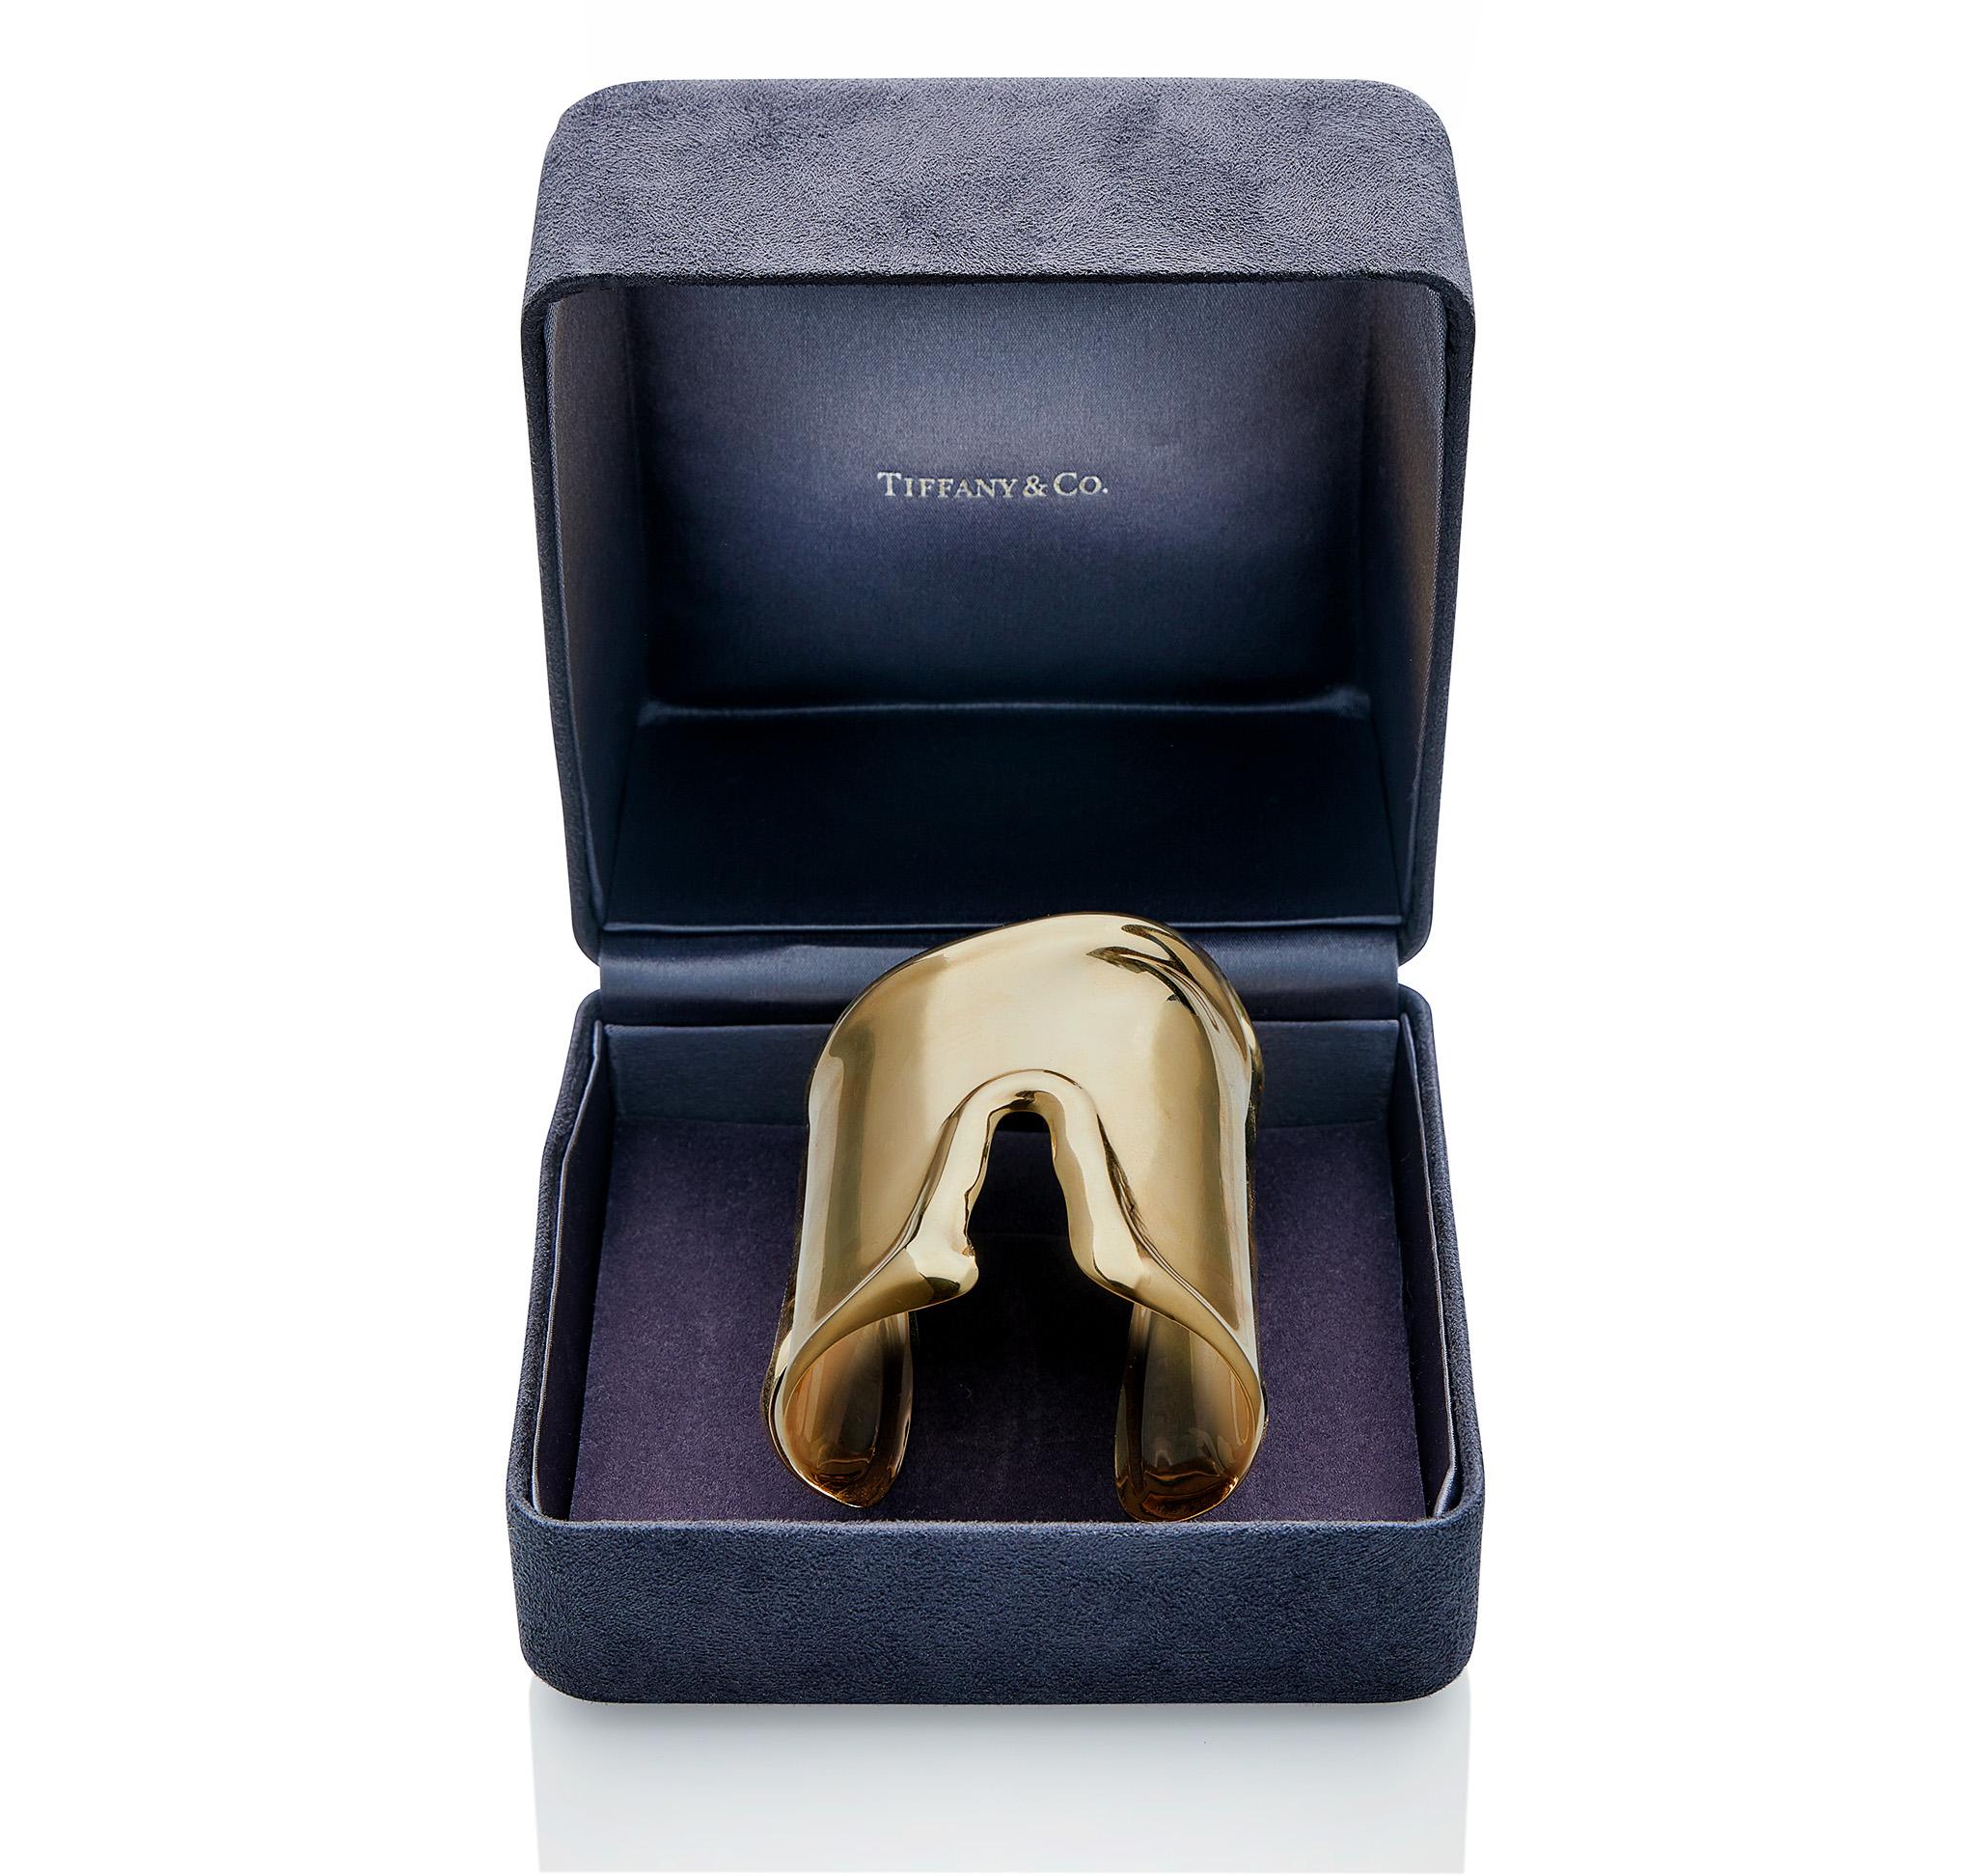 Ce bracelet manchette Elsa Peretti for Tiffany & Co. large bone, le grand design de forme plus longue, est composé d'or 18K. De style anatomique, avec des bords surélevés, la manchette reflète les contours naturels de l'os du poignet sous-jacent.